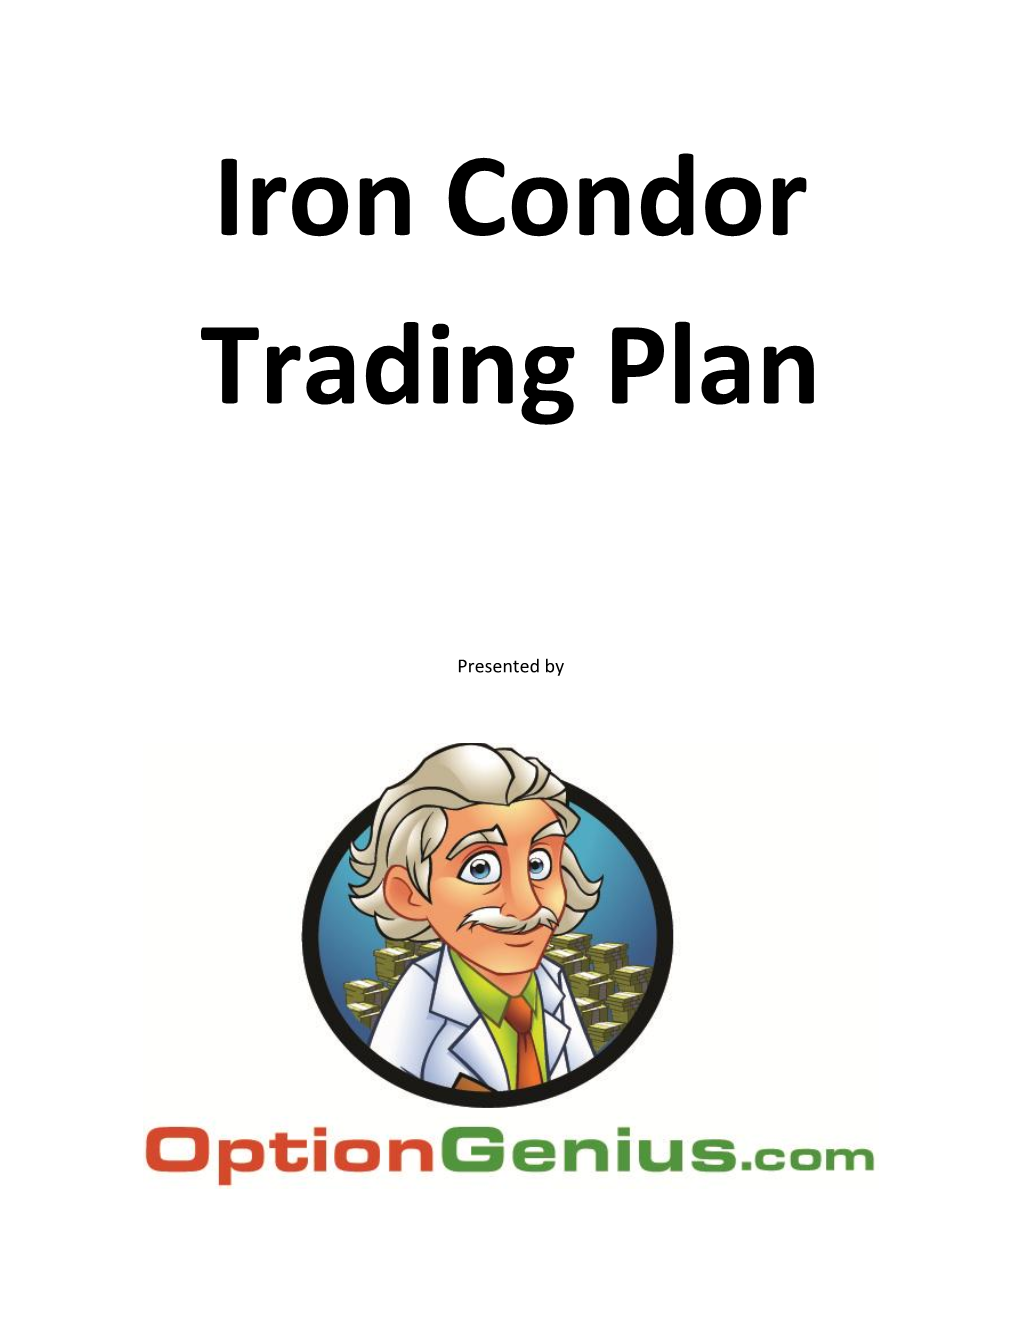 Iron Condor Trading Plan